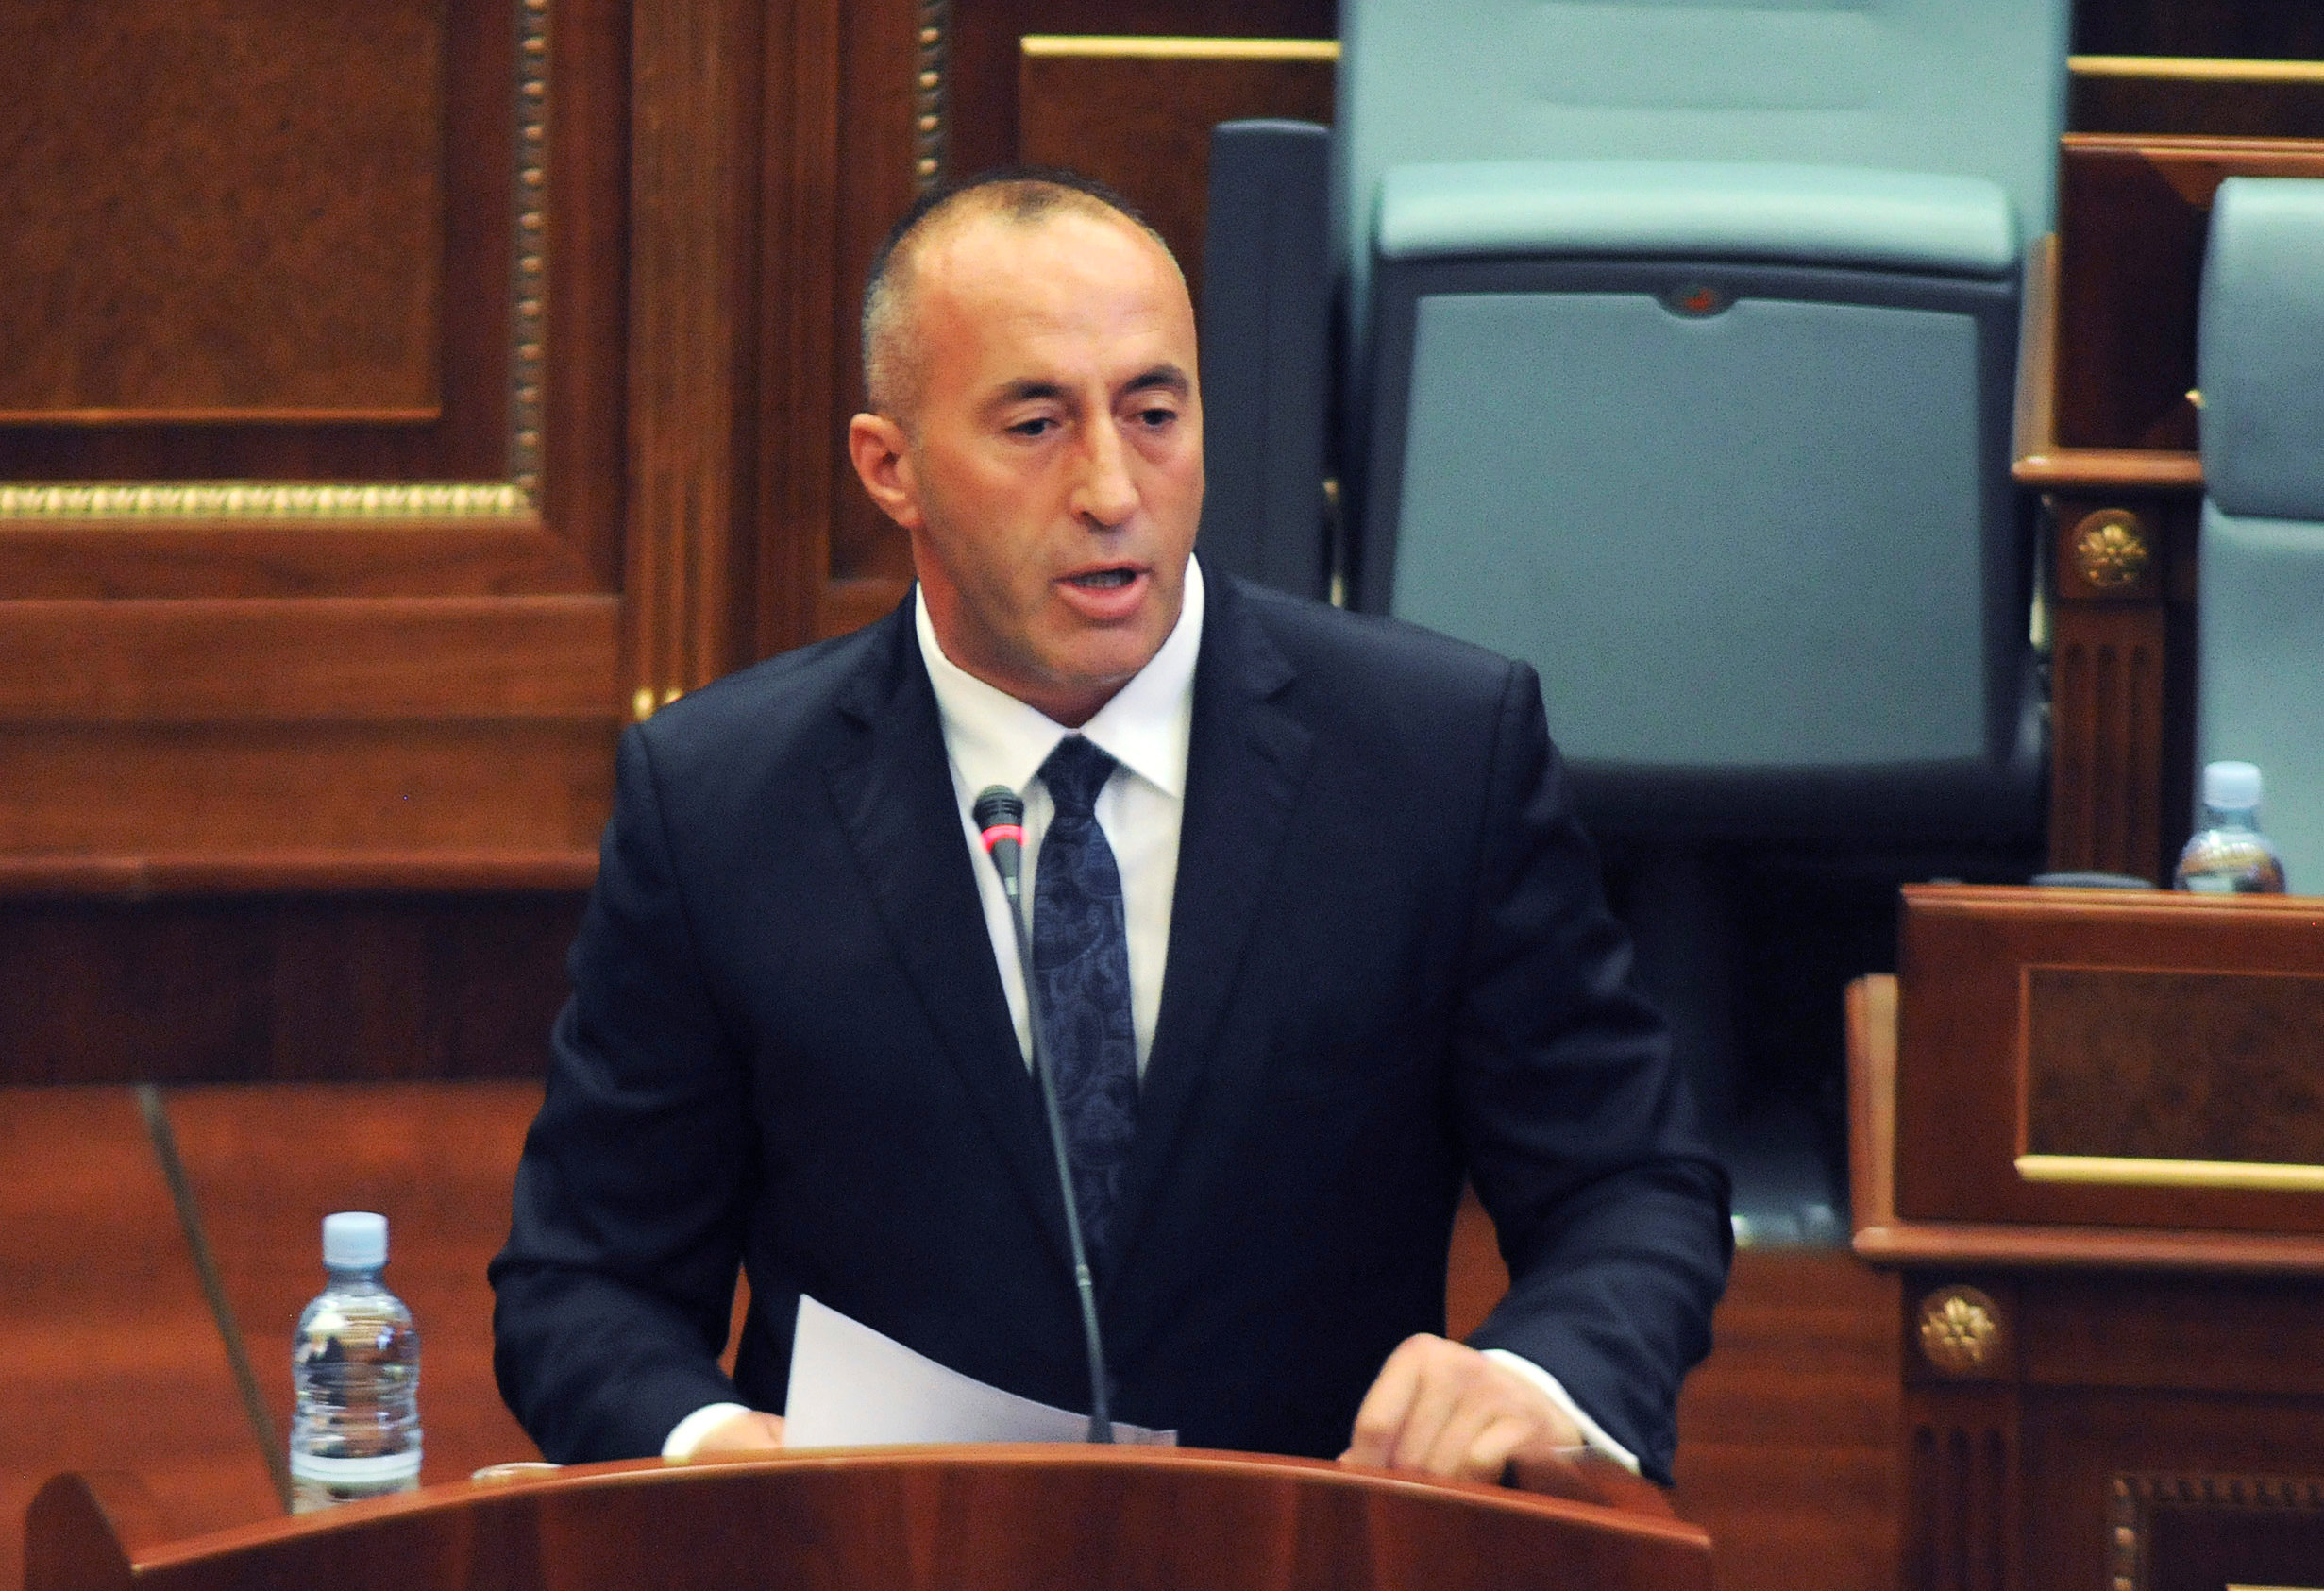 راموش هاراديناج رئيس وزراء كوسوفو المنتخب حديثا